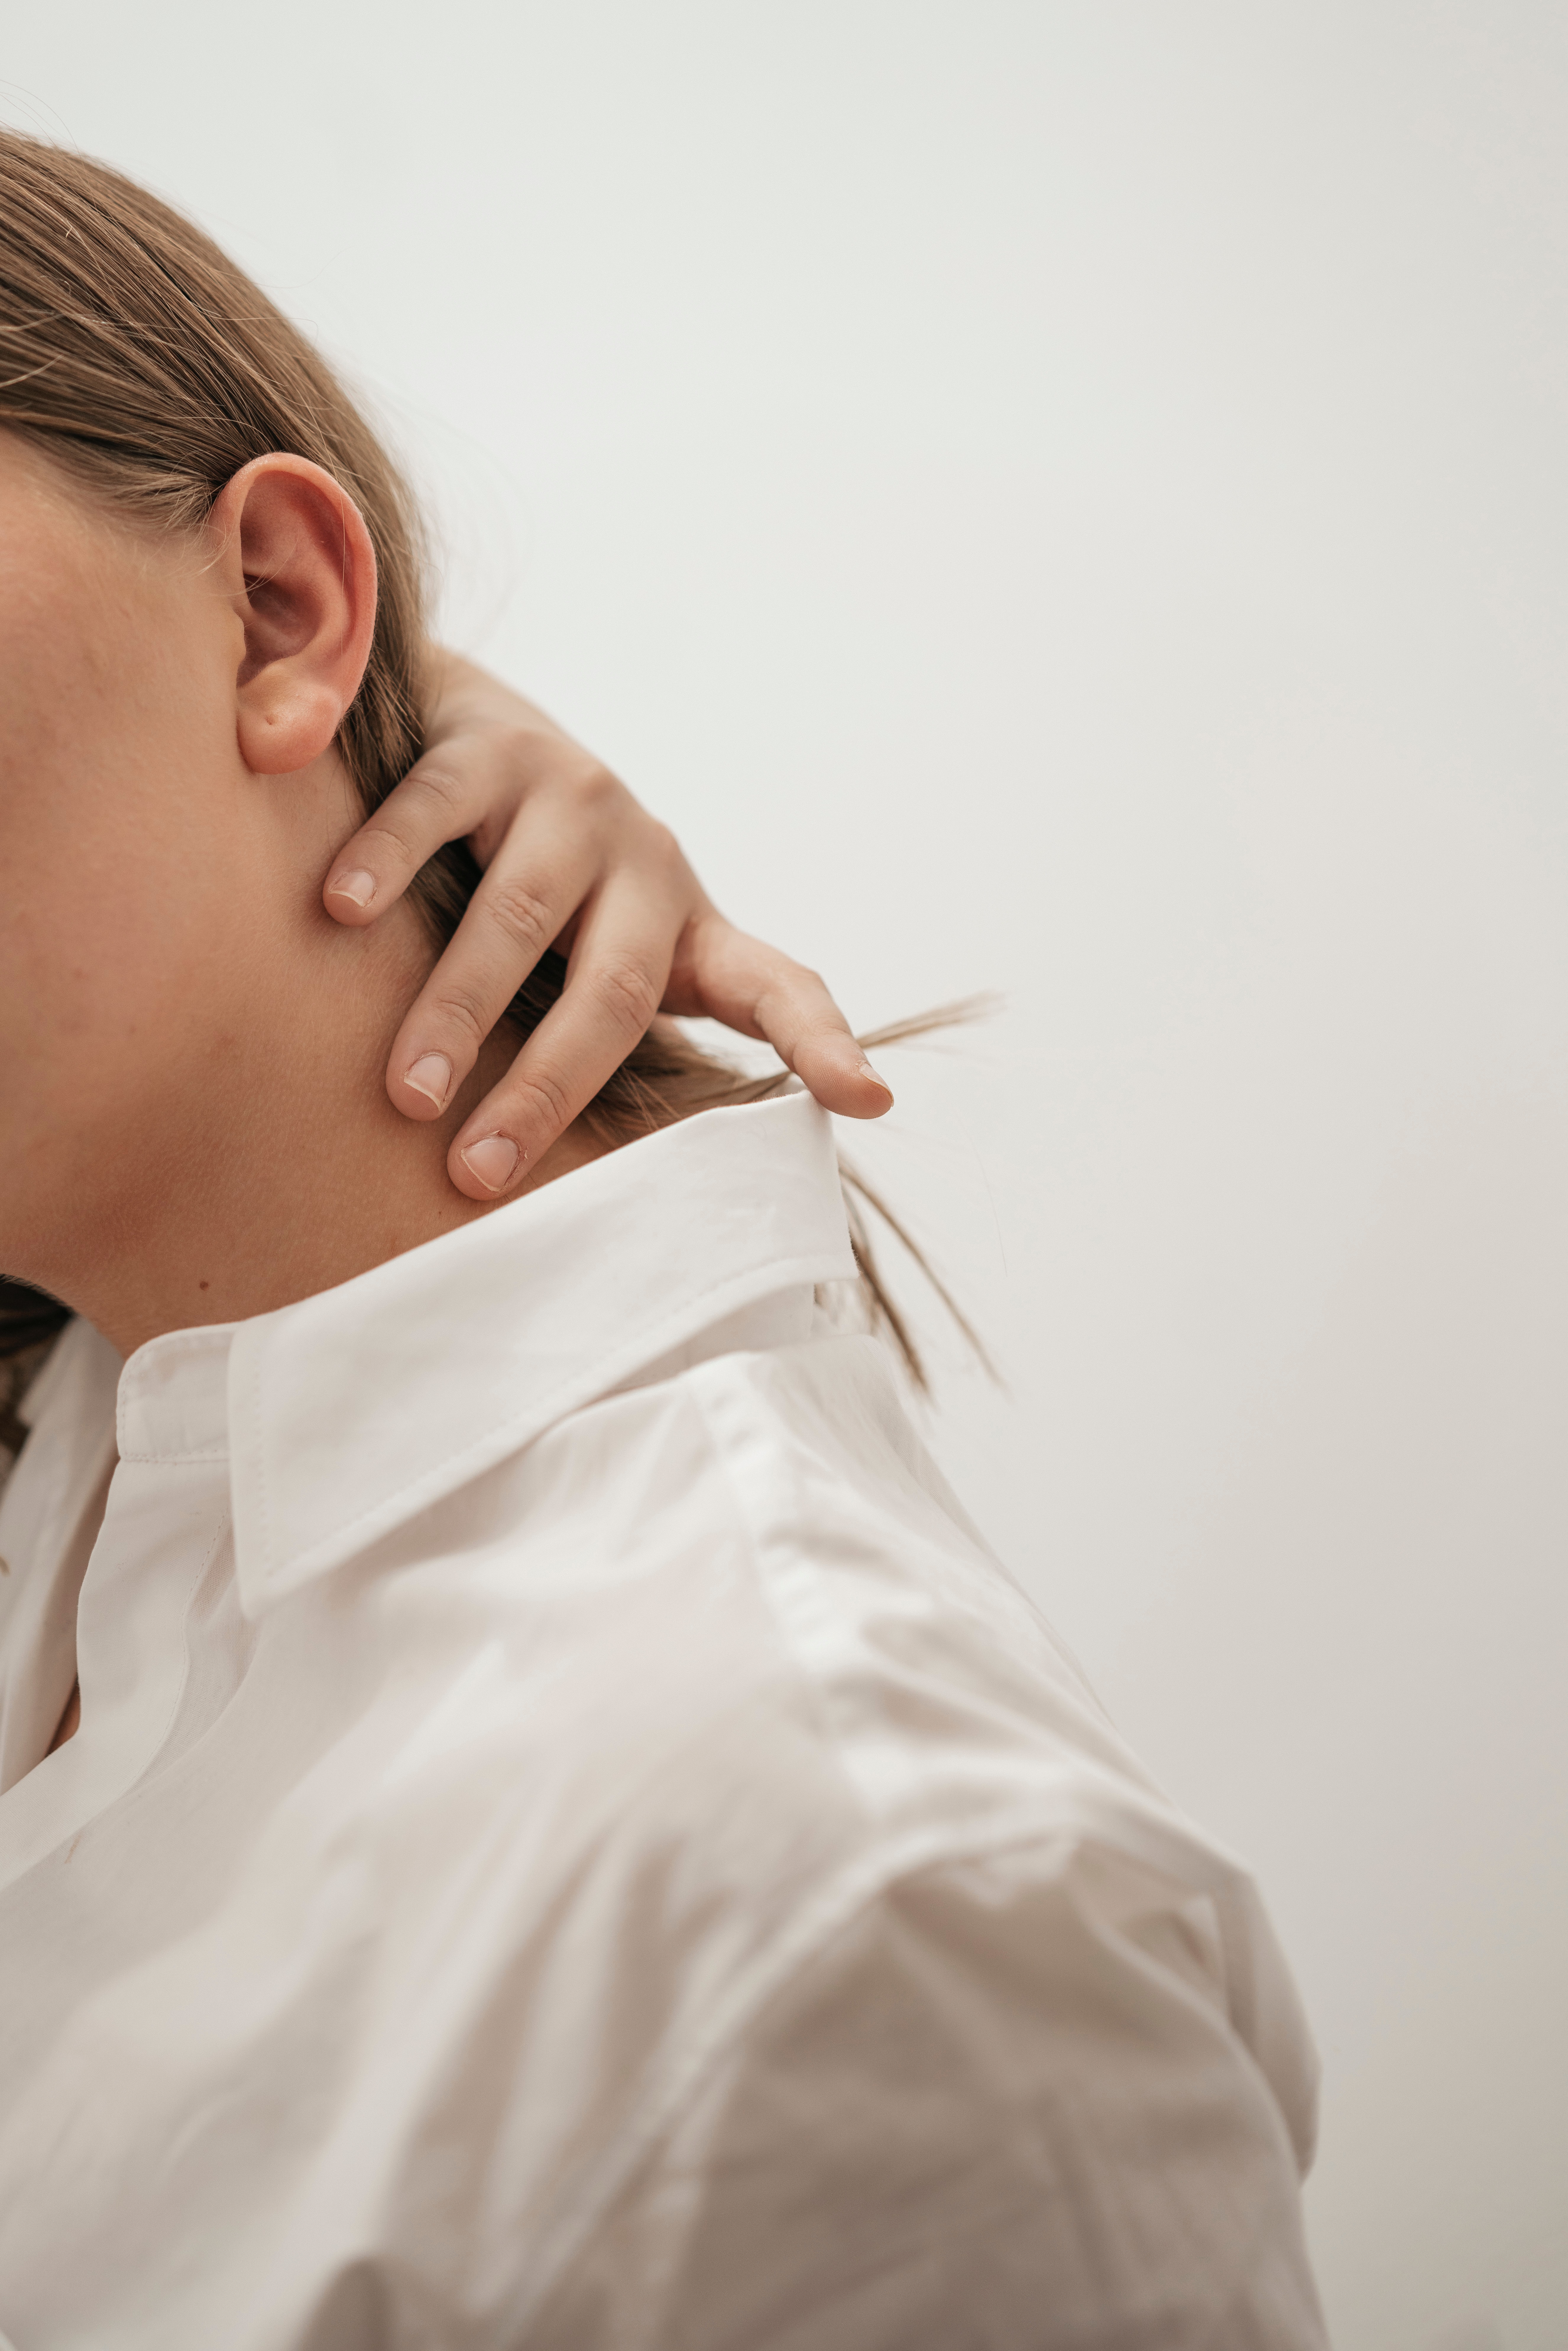 Les causes courantes de la douleur chronique et comment les soulager